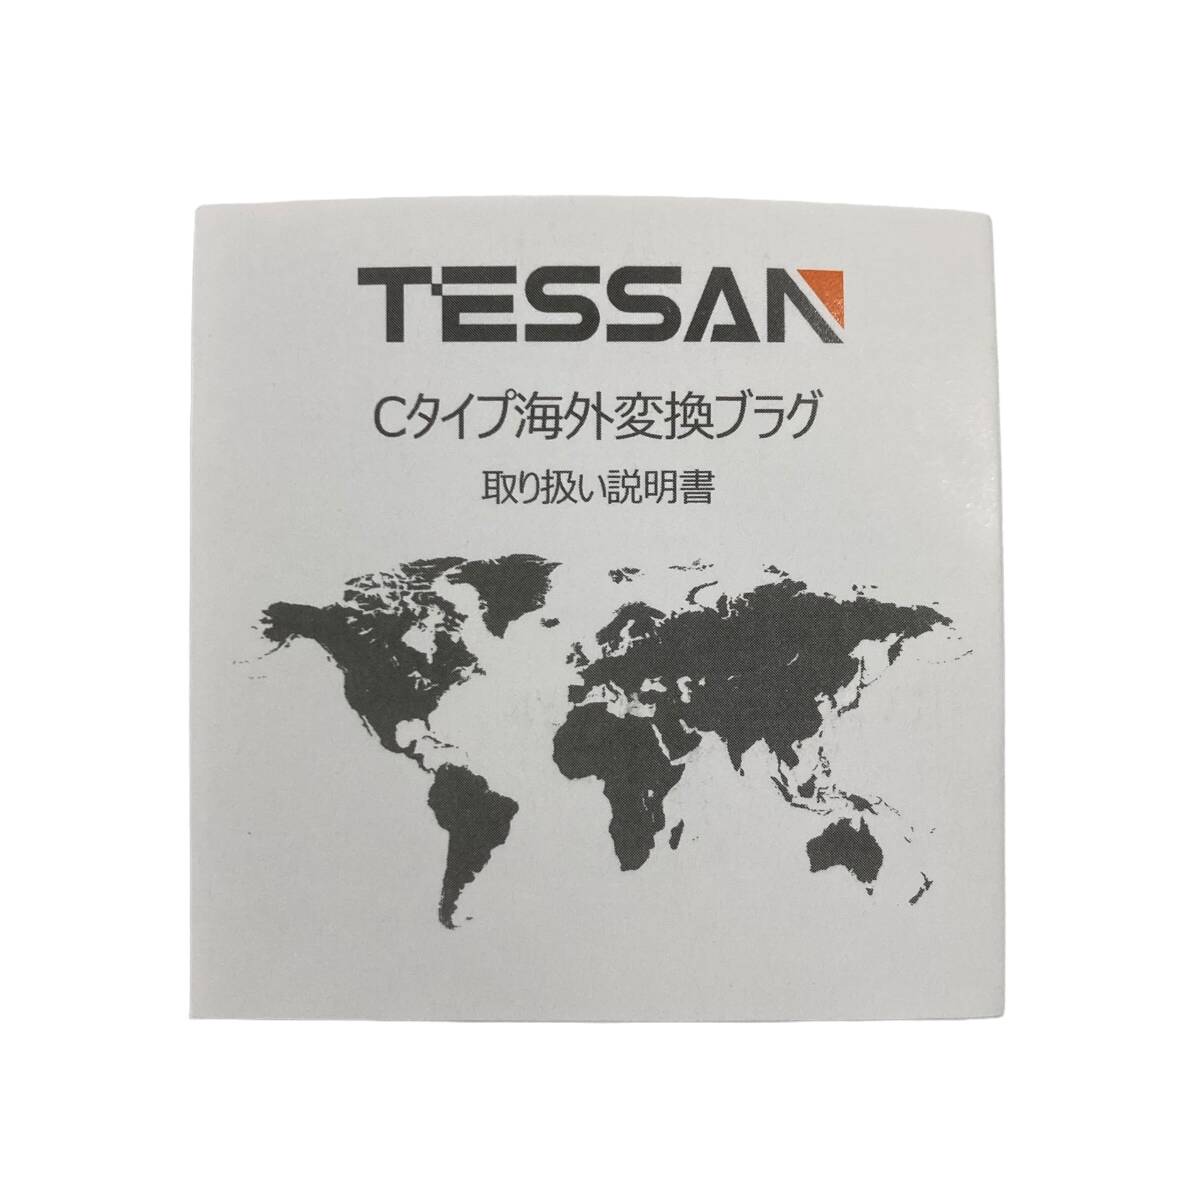 【1円オークション】TESSAN 変換プラグ Cタイプ 海外旅行用 変換器 変換アダプター コンセント変換 4個AC差込口 3USBポート付き ARM0122_画像6